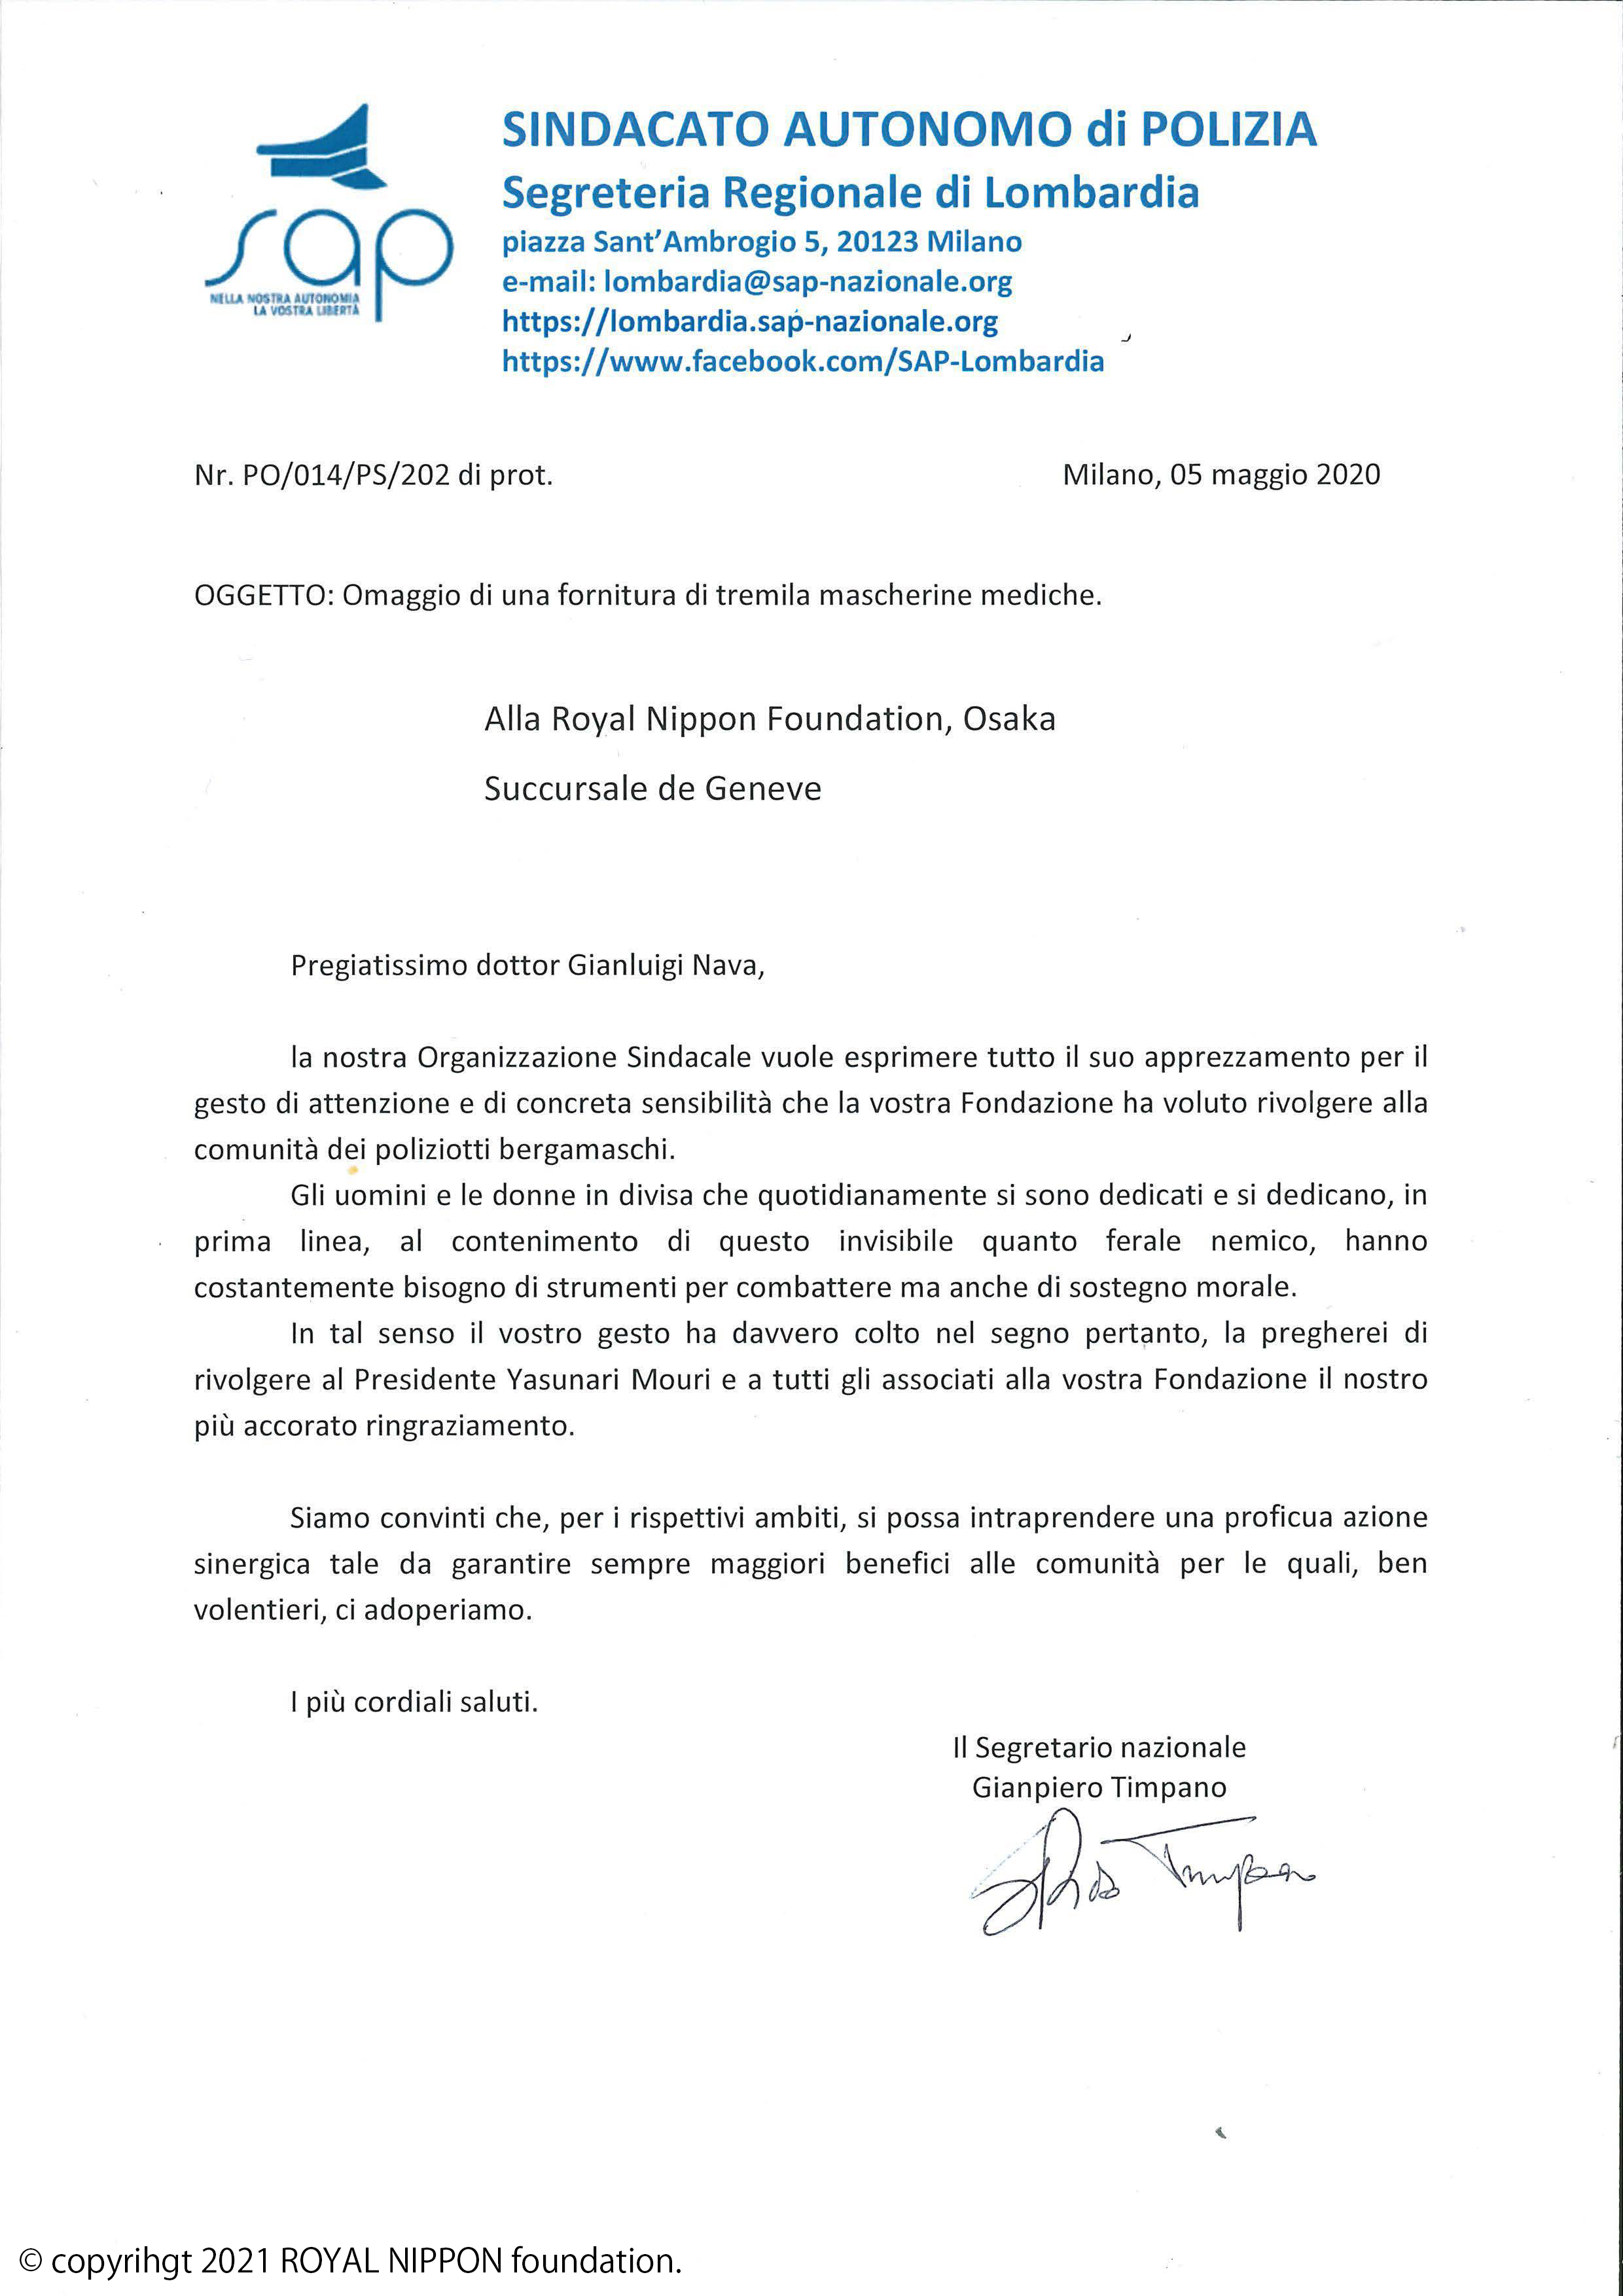 イタリア警察協会、ベルガモ市警察、軍警察より、寄付活動への感謝状を授与されました。